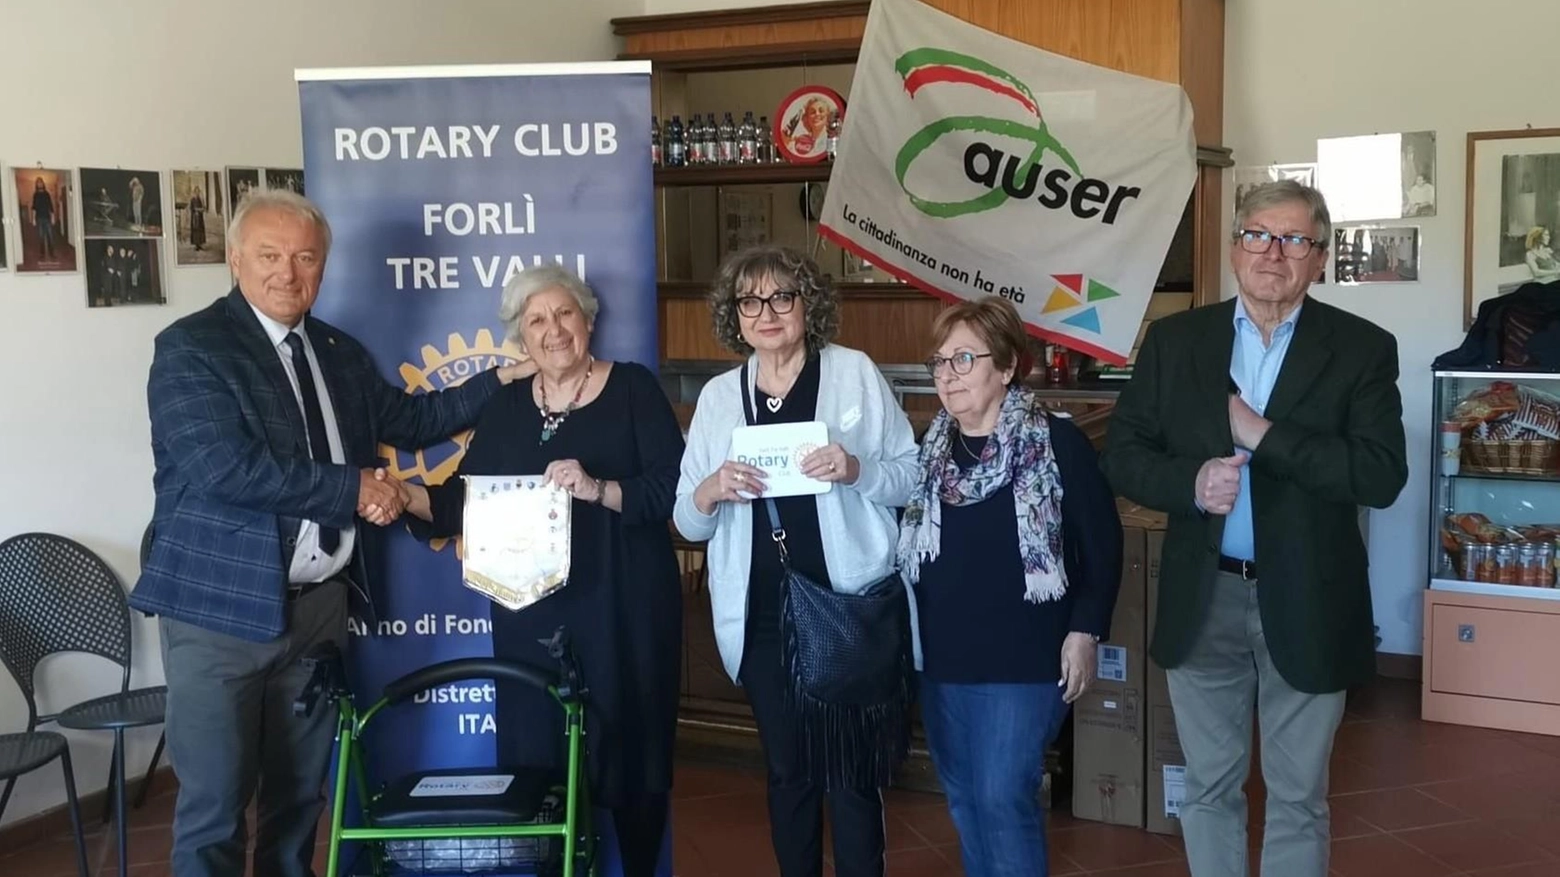 Il Rotary Club Forlì Tre Valli ha donato all'Auser di Forlì deambulatori e fondi per un'auto per l'accompagnamento sociale degli anziani delle tre vallate. La presidente Auser esprime gratitudine per il sostegno fondamentale ricevuto.